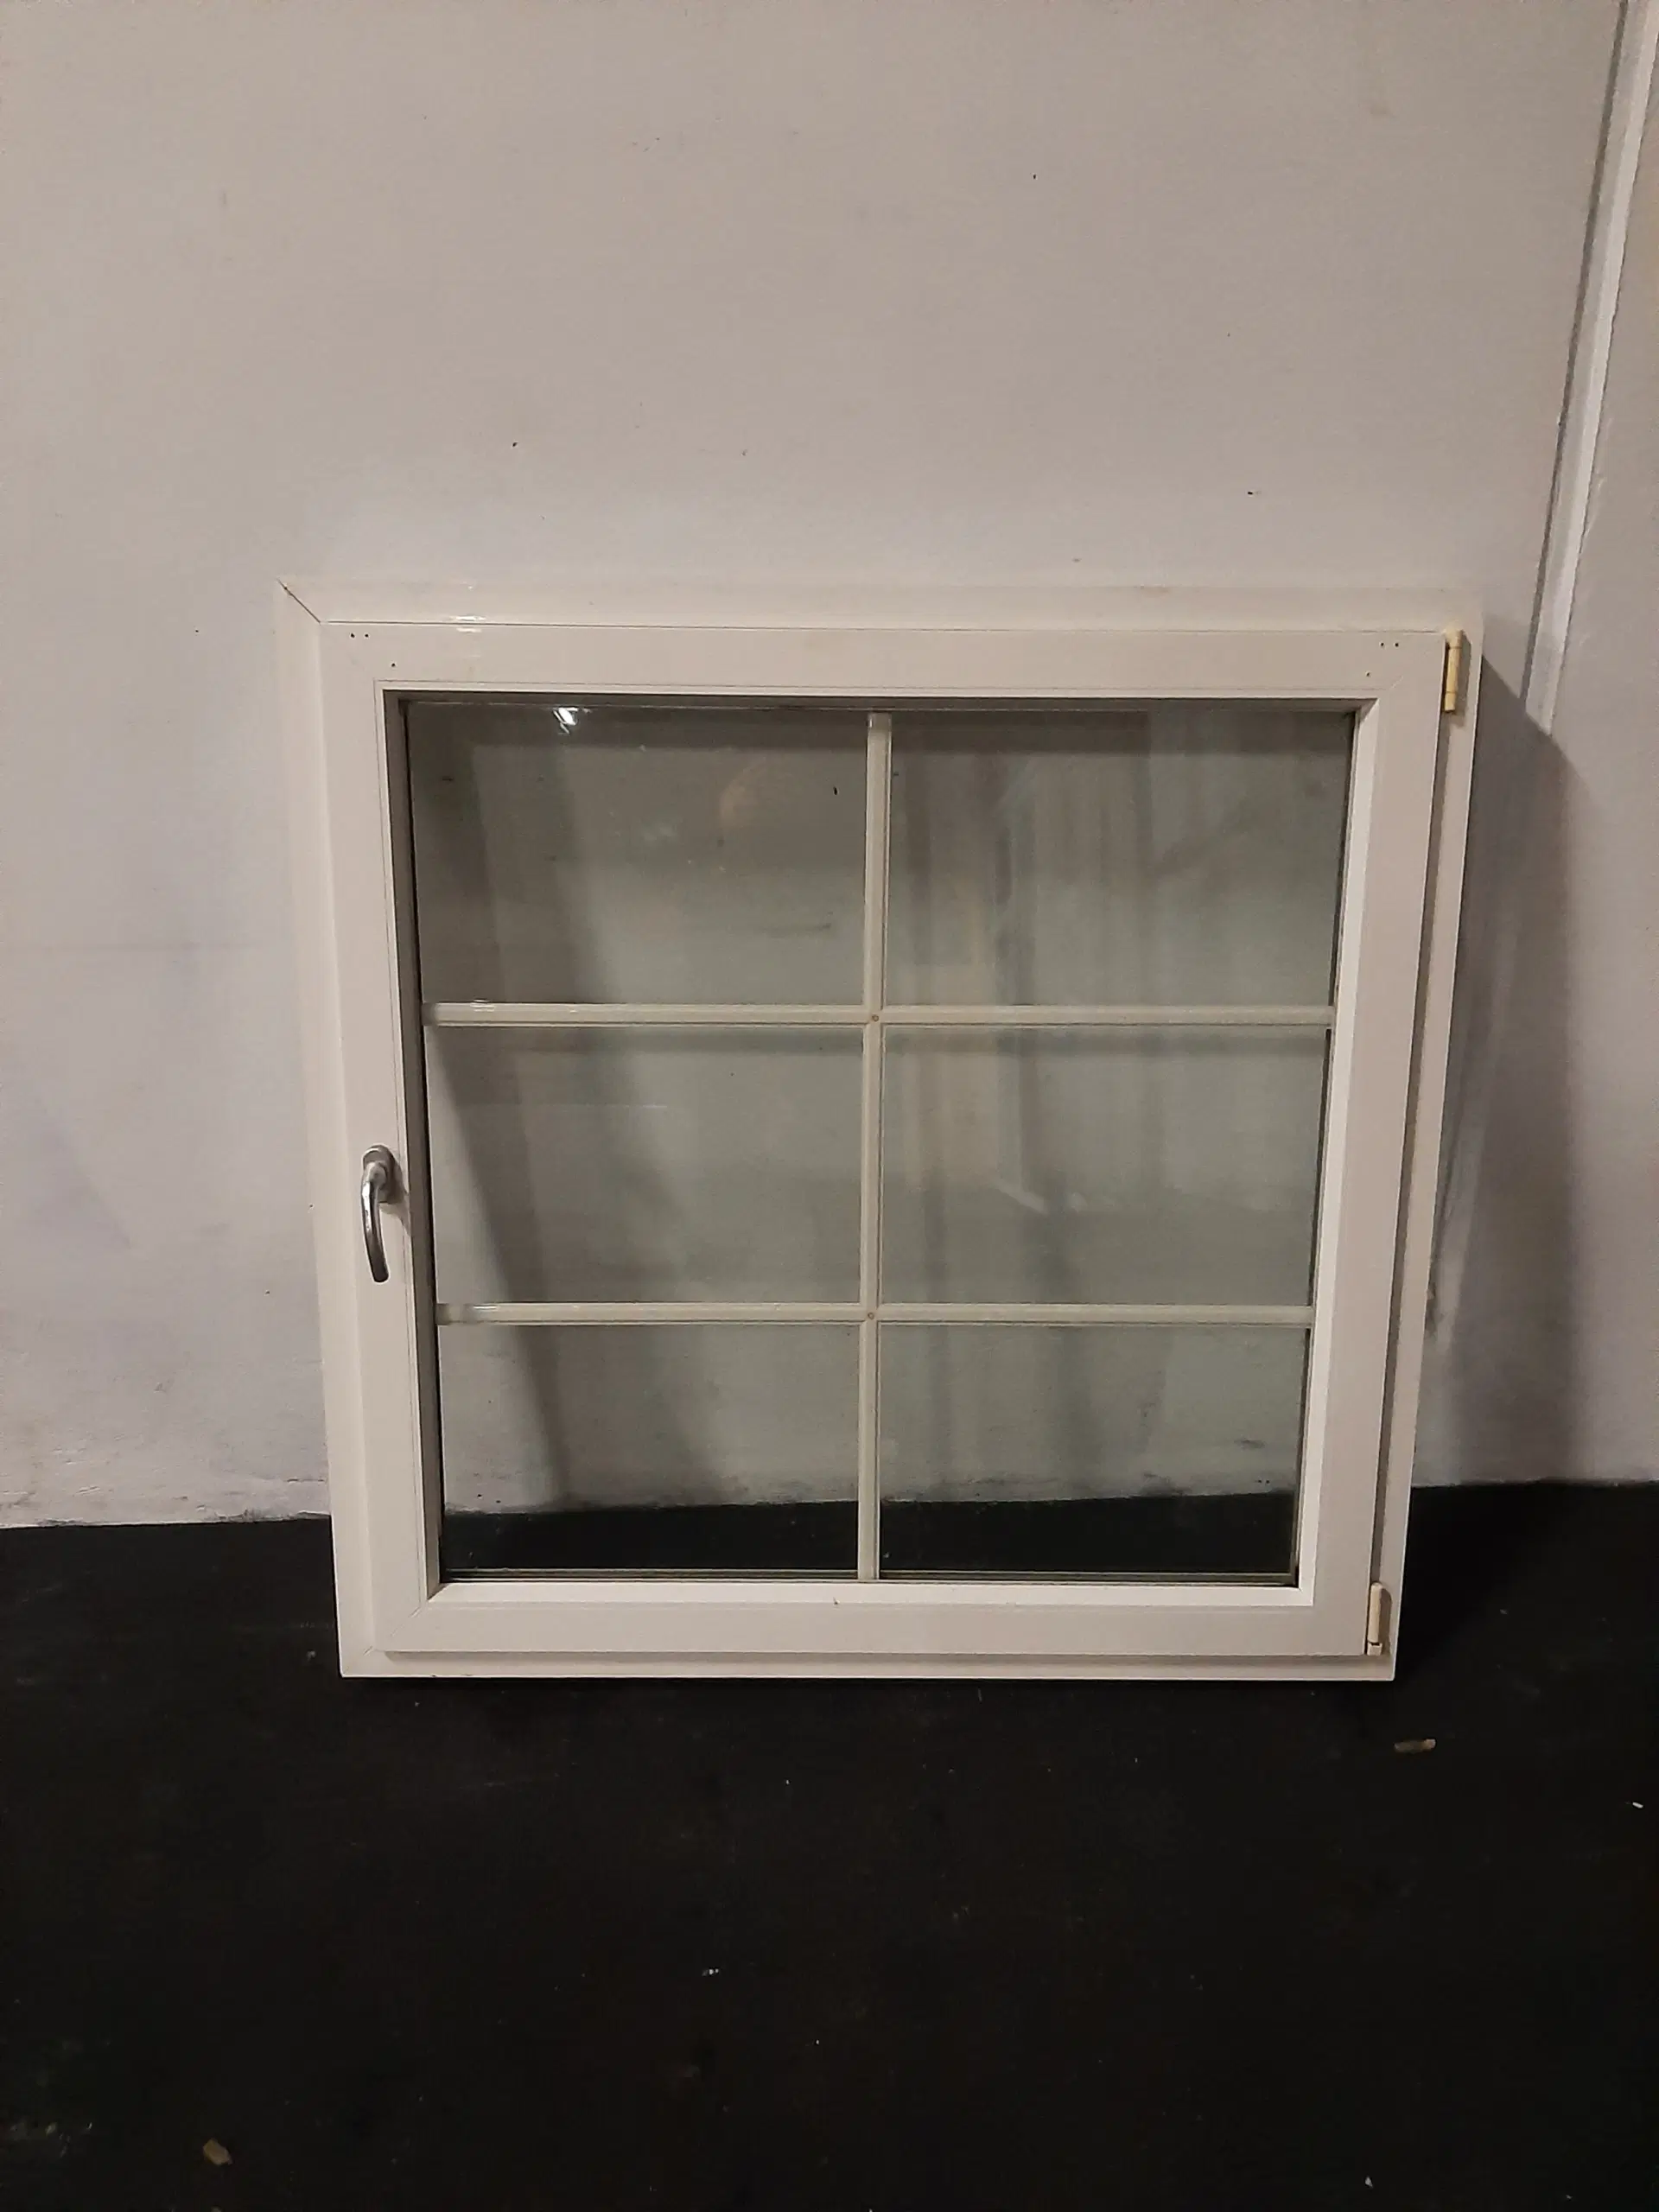 Dreje-kip vindue i pvc 1289x120x1289 mm højrehængt hvid